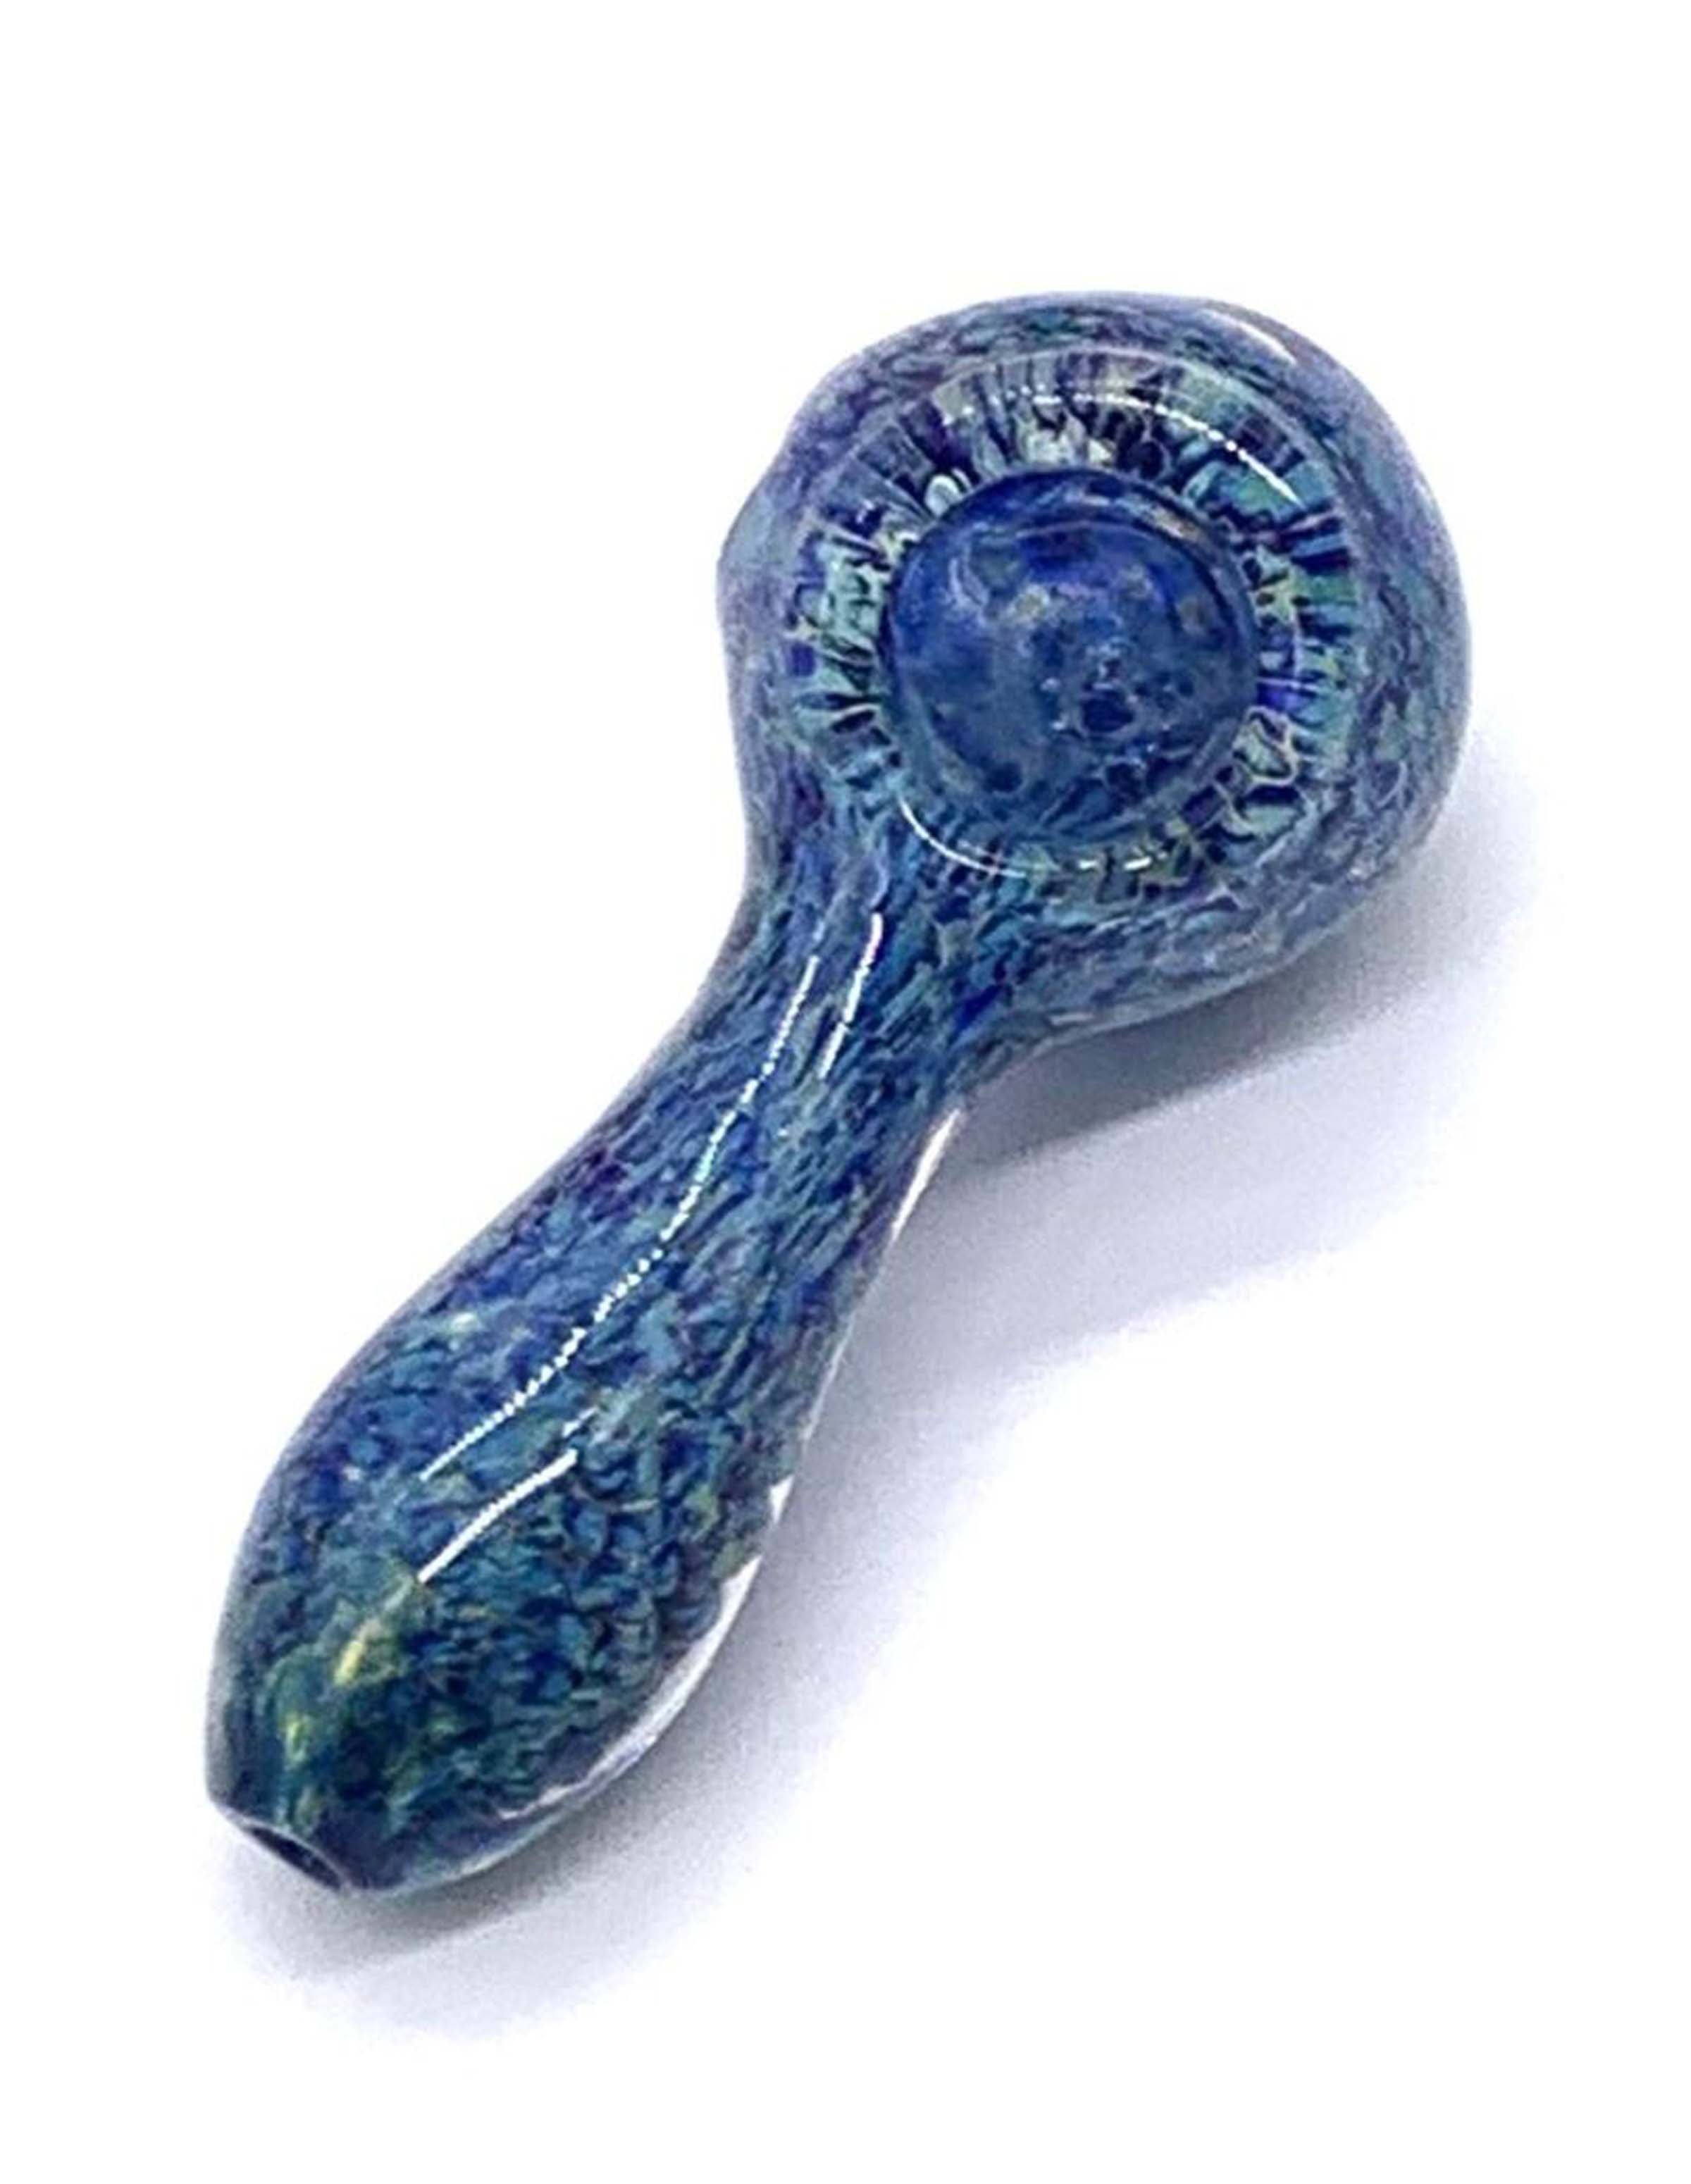 4" Blue Haze Spoon Pipe, Glass Spoon Pipe